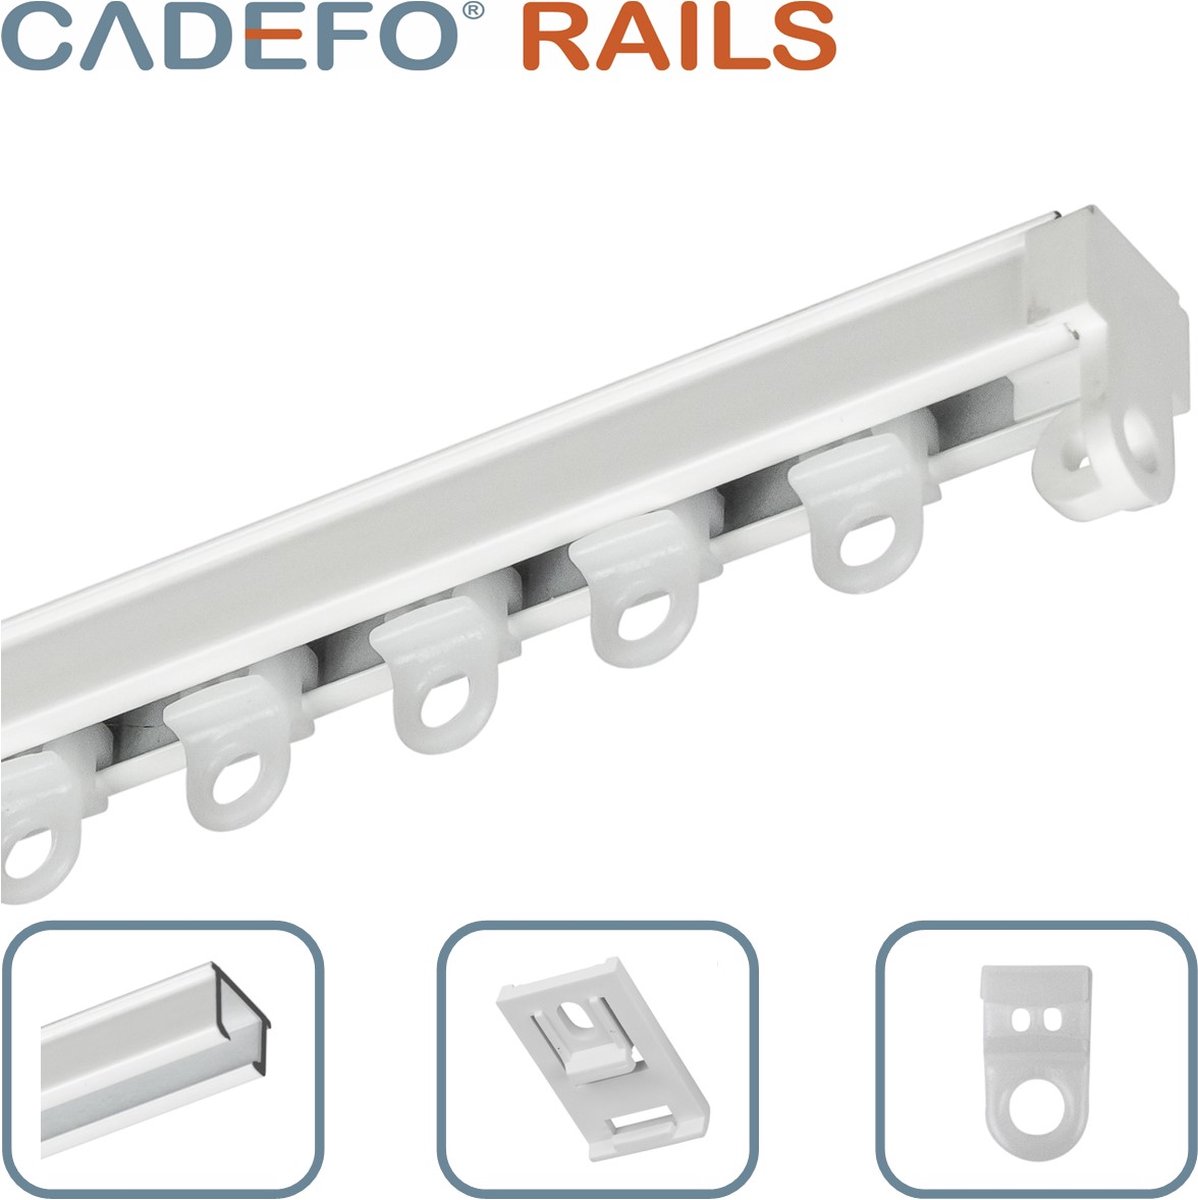 CADEFO RAILS (151 - 200 cm) Gordijnrails - Compleet op maat! - UIT 1 STUK - Leverbaar tot 6 meter - Plafondbevestiging - Lengte 179 cm